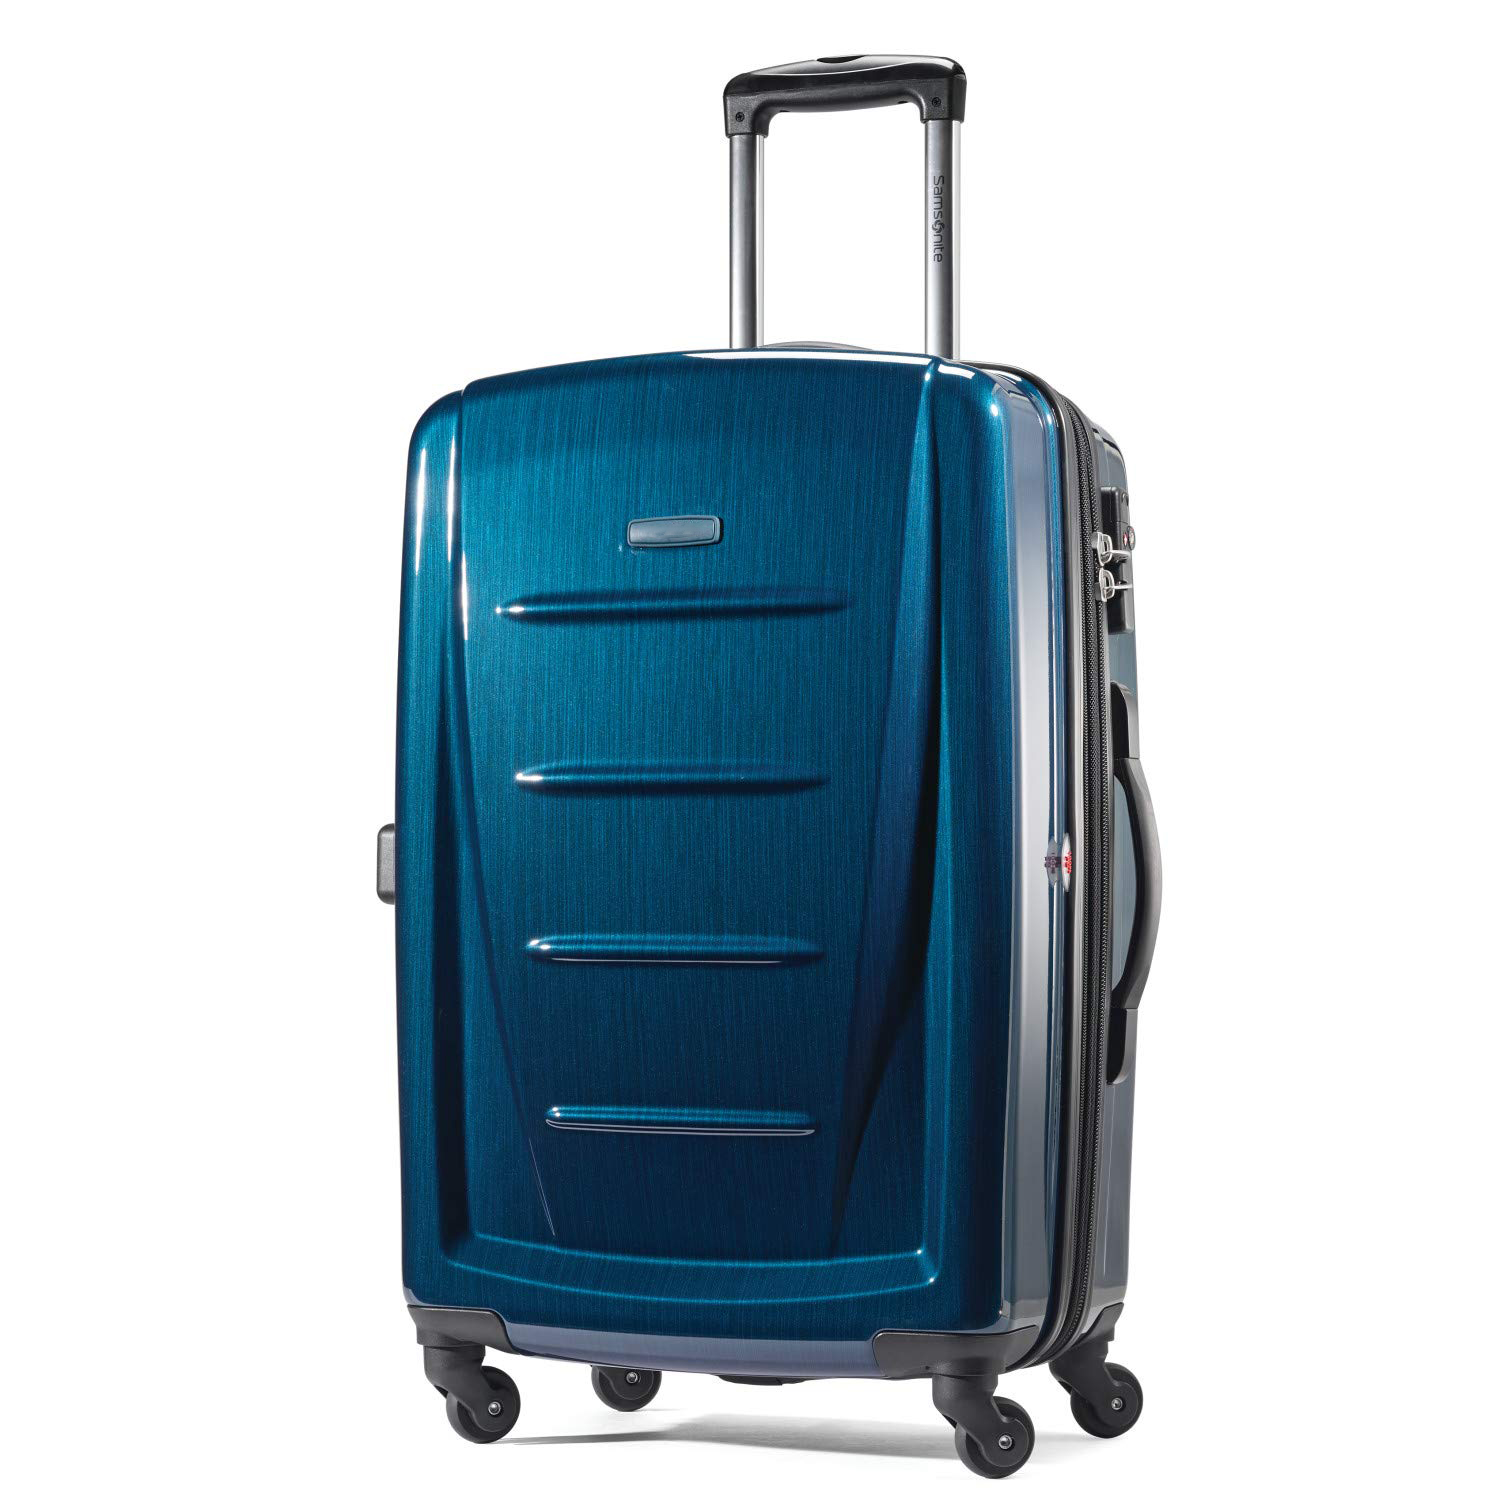 กระเป๋าเดินทางแบบขยายได้แบบแข็งพร้อมล้อเลื่อนสีน้ำเงินหลากสี